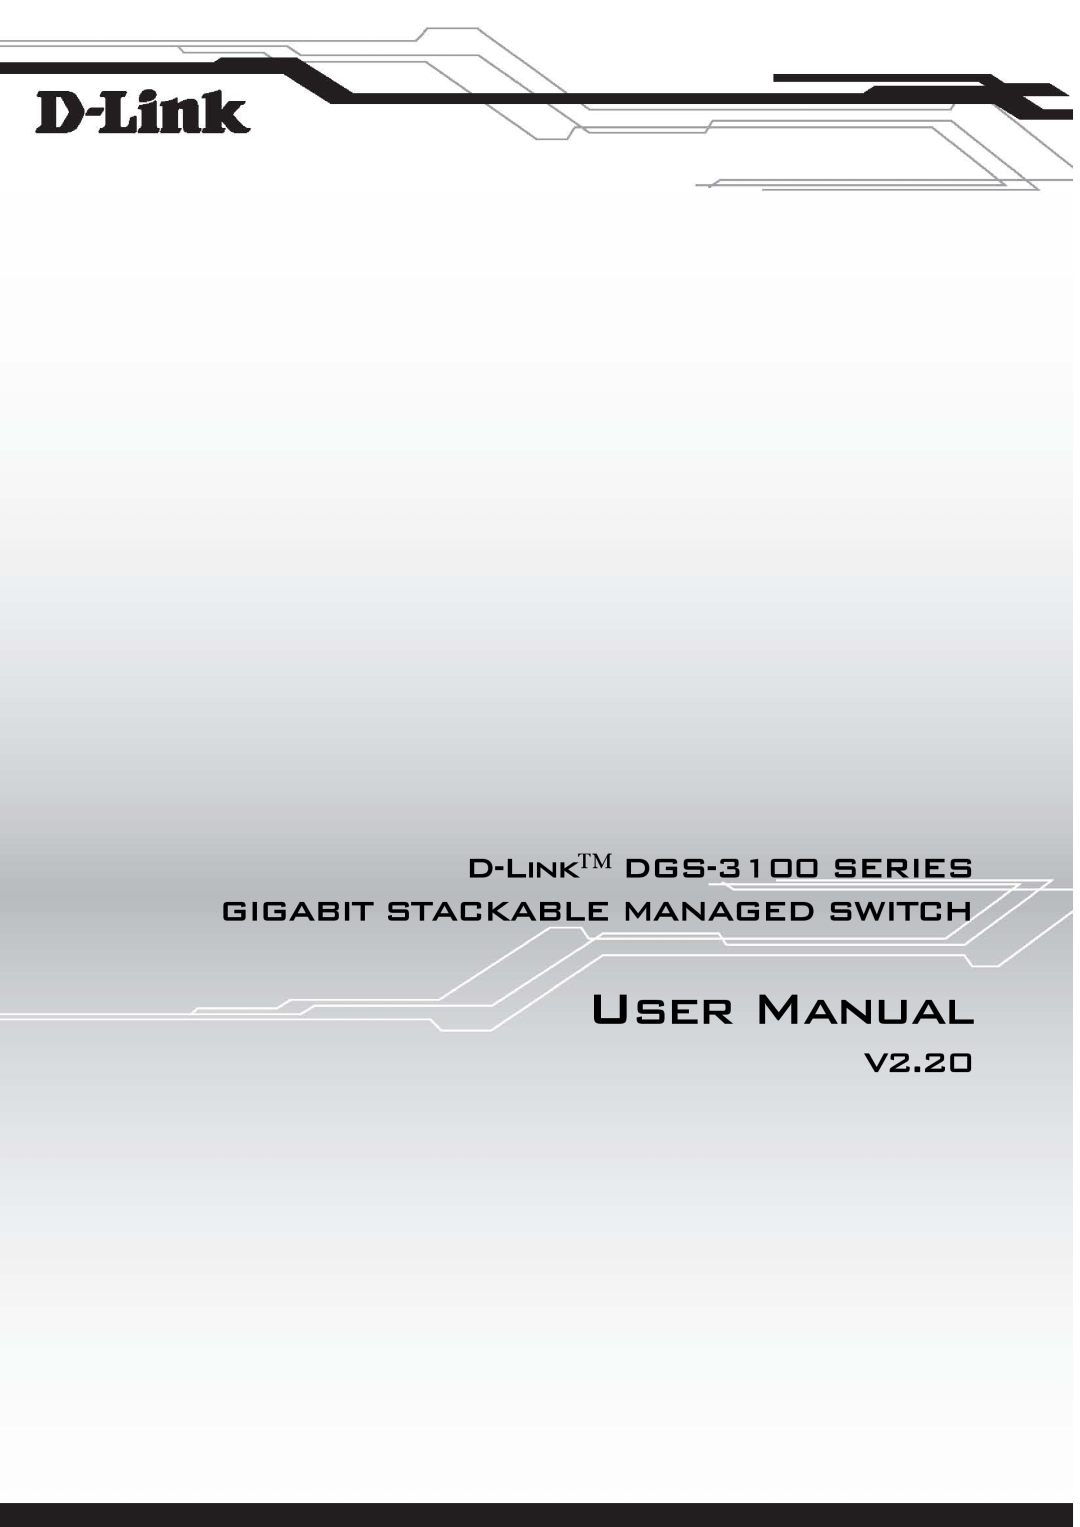 D-Link user manual User Manual, D-Link DGS-3100 SERIES GIGABIT STACKABLE MANAGED SWITCH, V2.20 